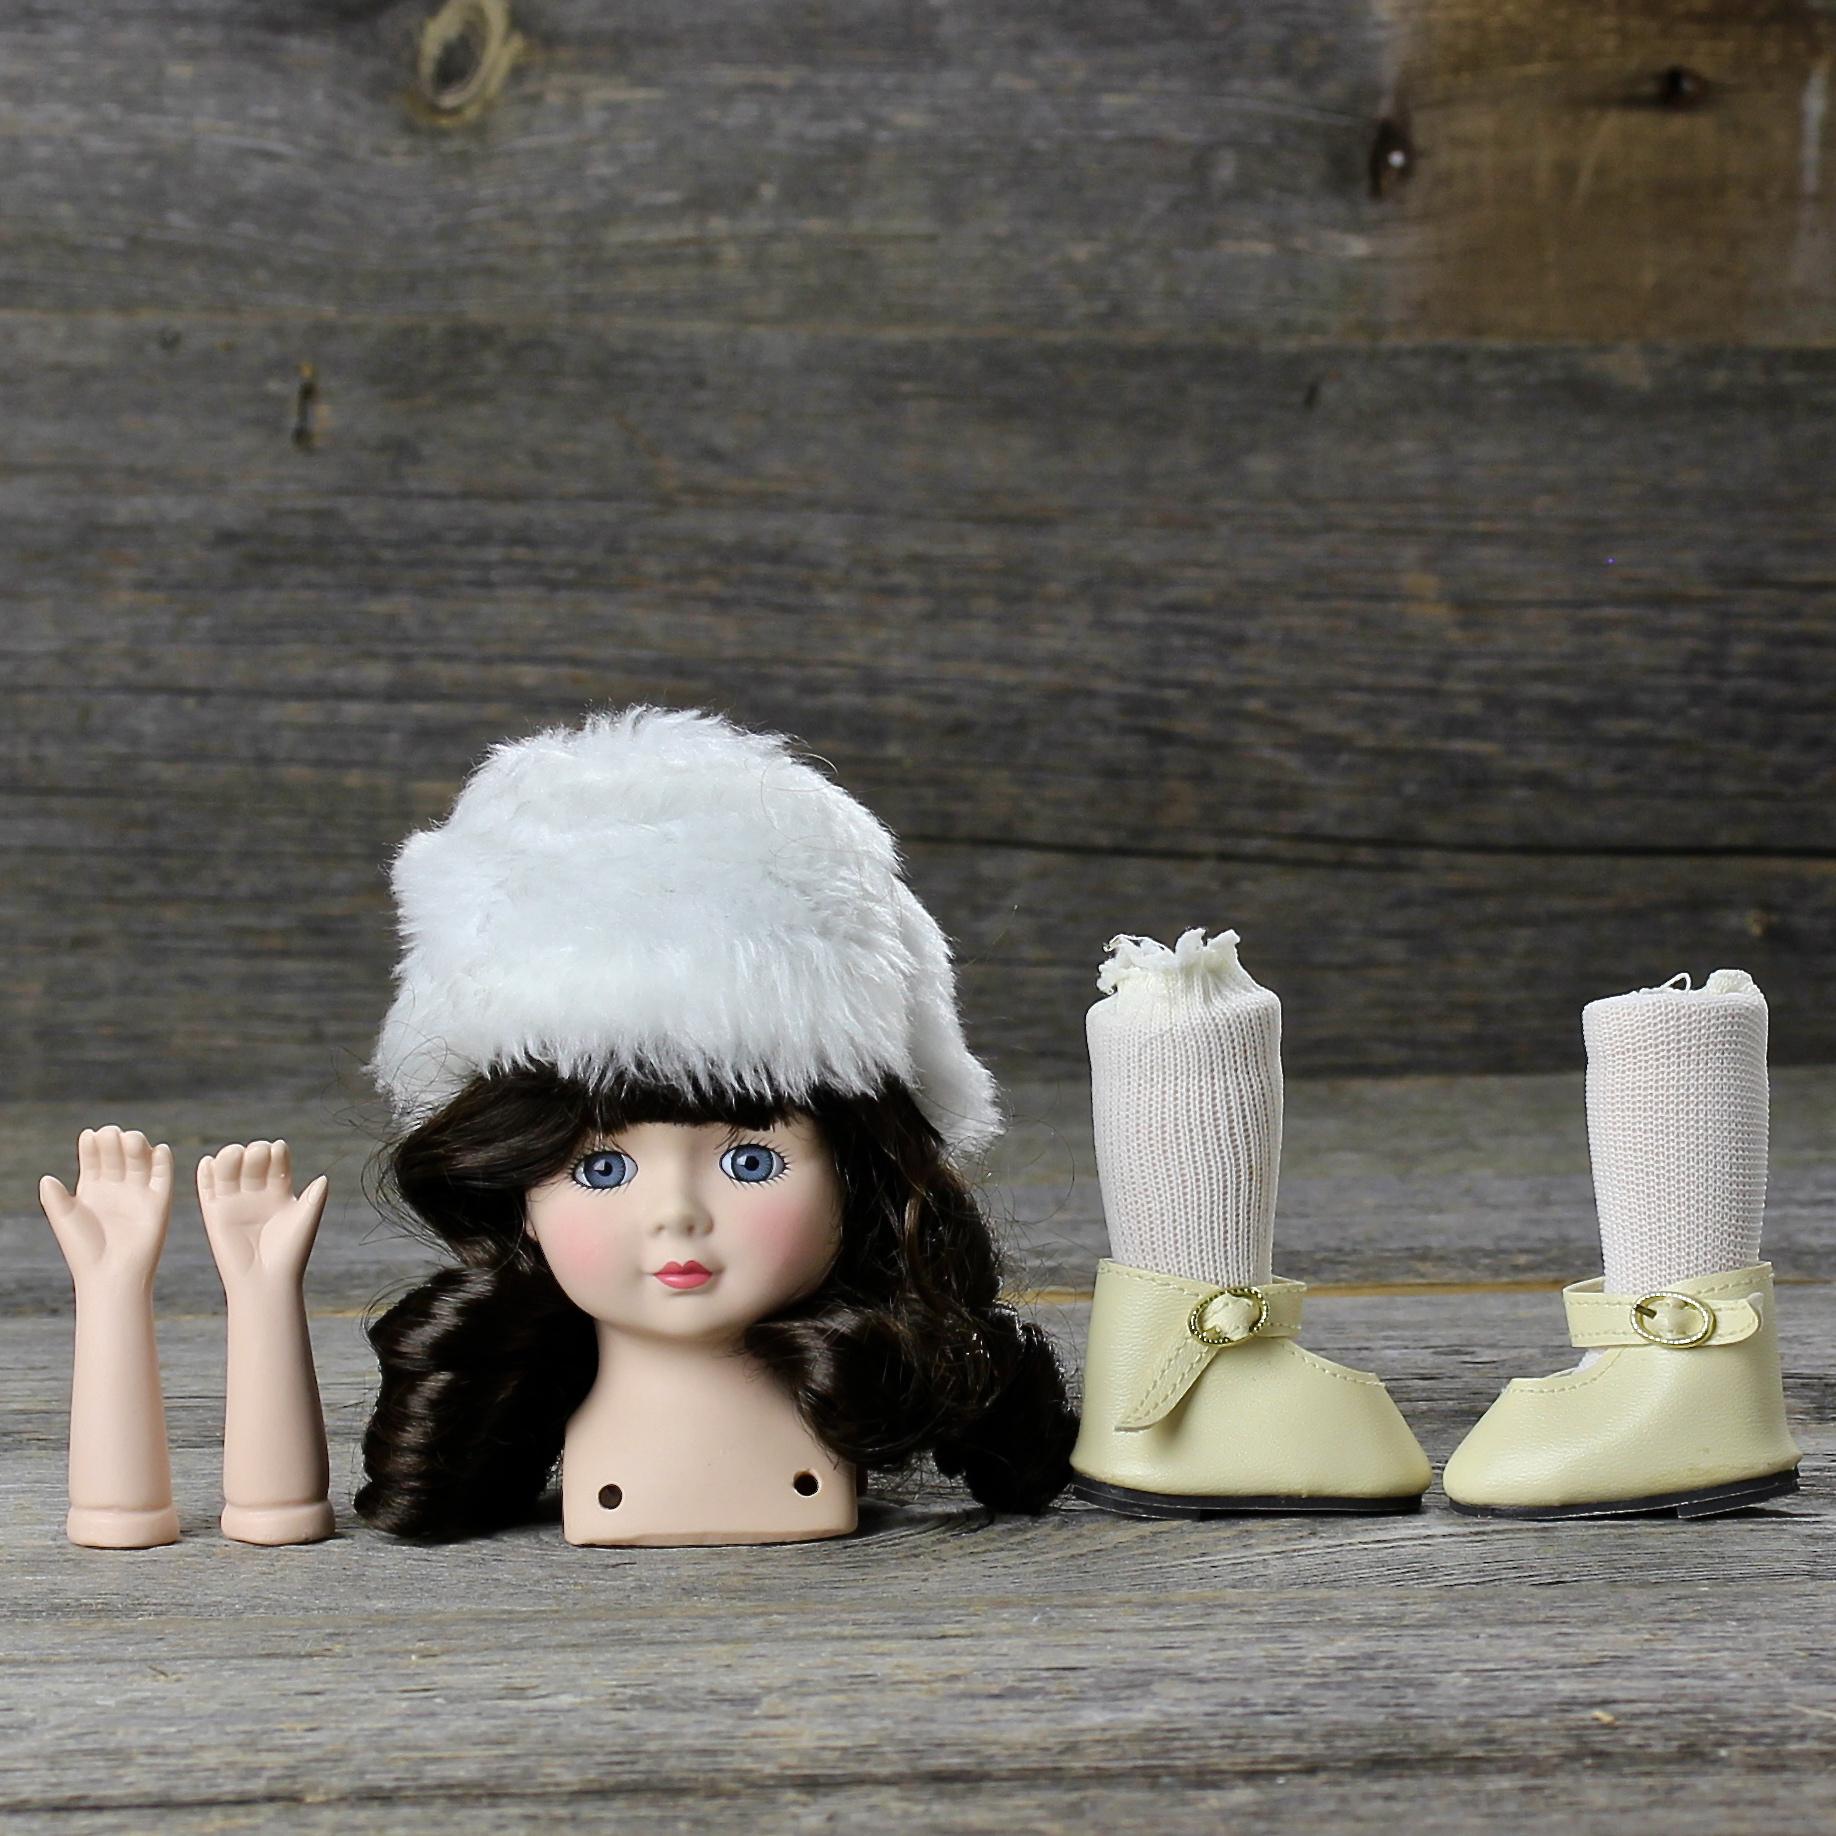 Винтажные детали для куклы с лондонского блошиного рынка Фарфоровый бюст, шапочка, ручки, ножки в чулках и туфельках